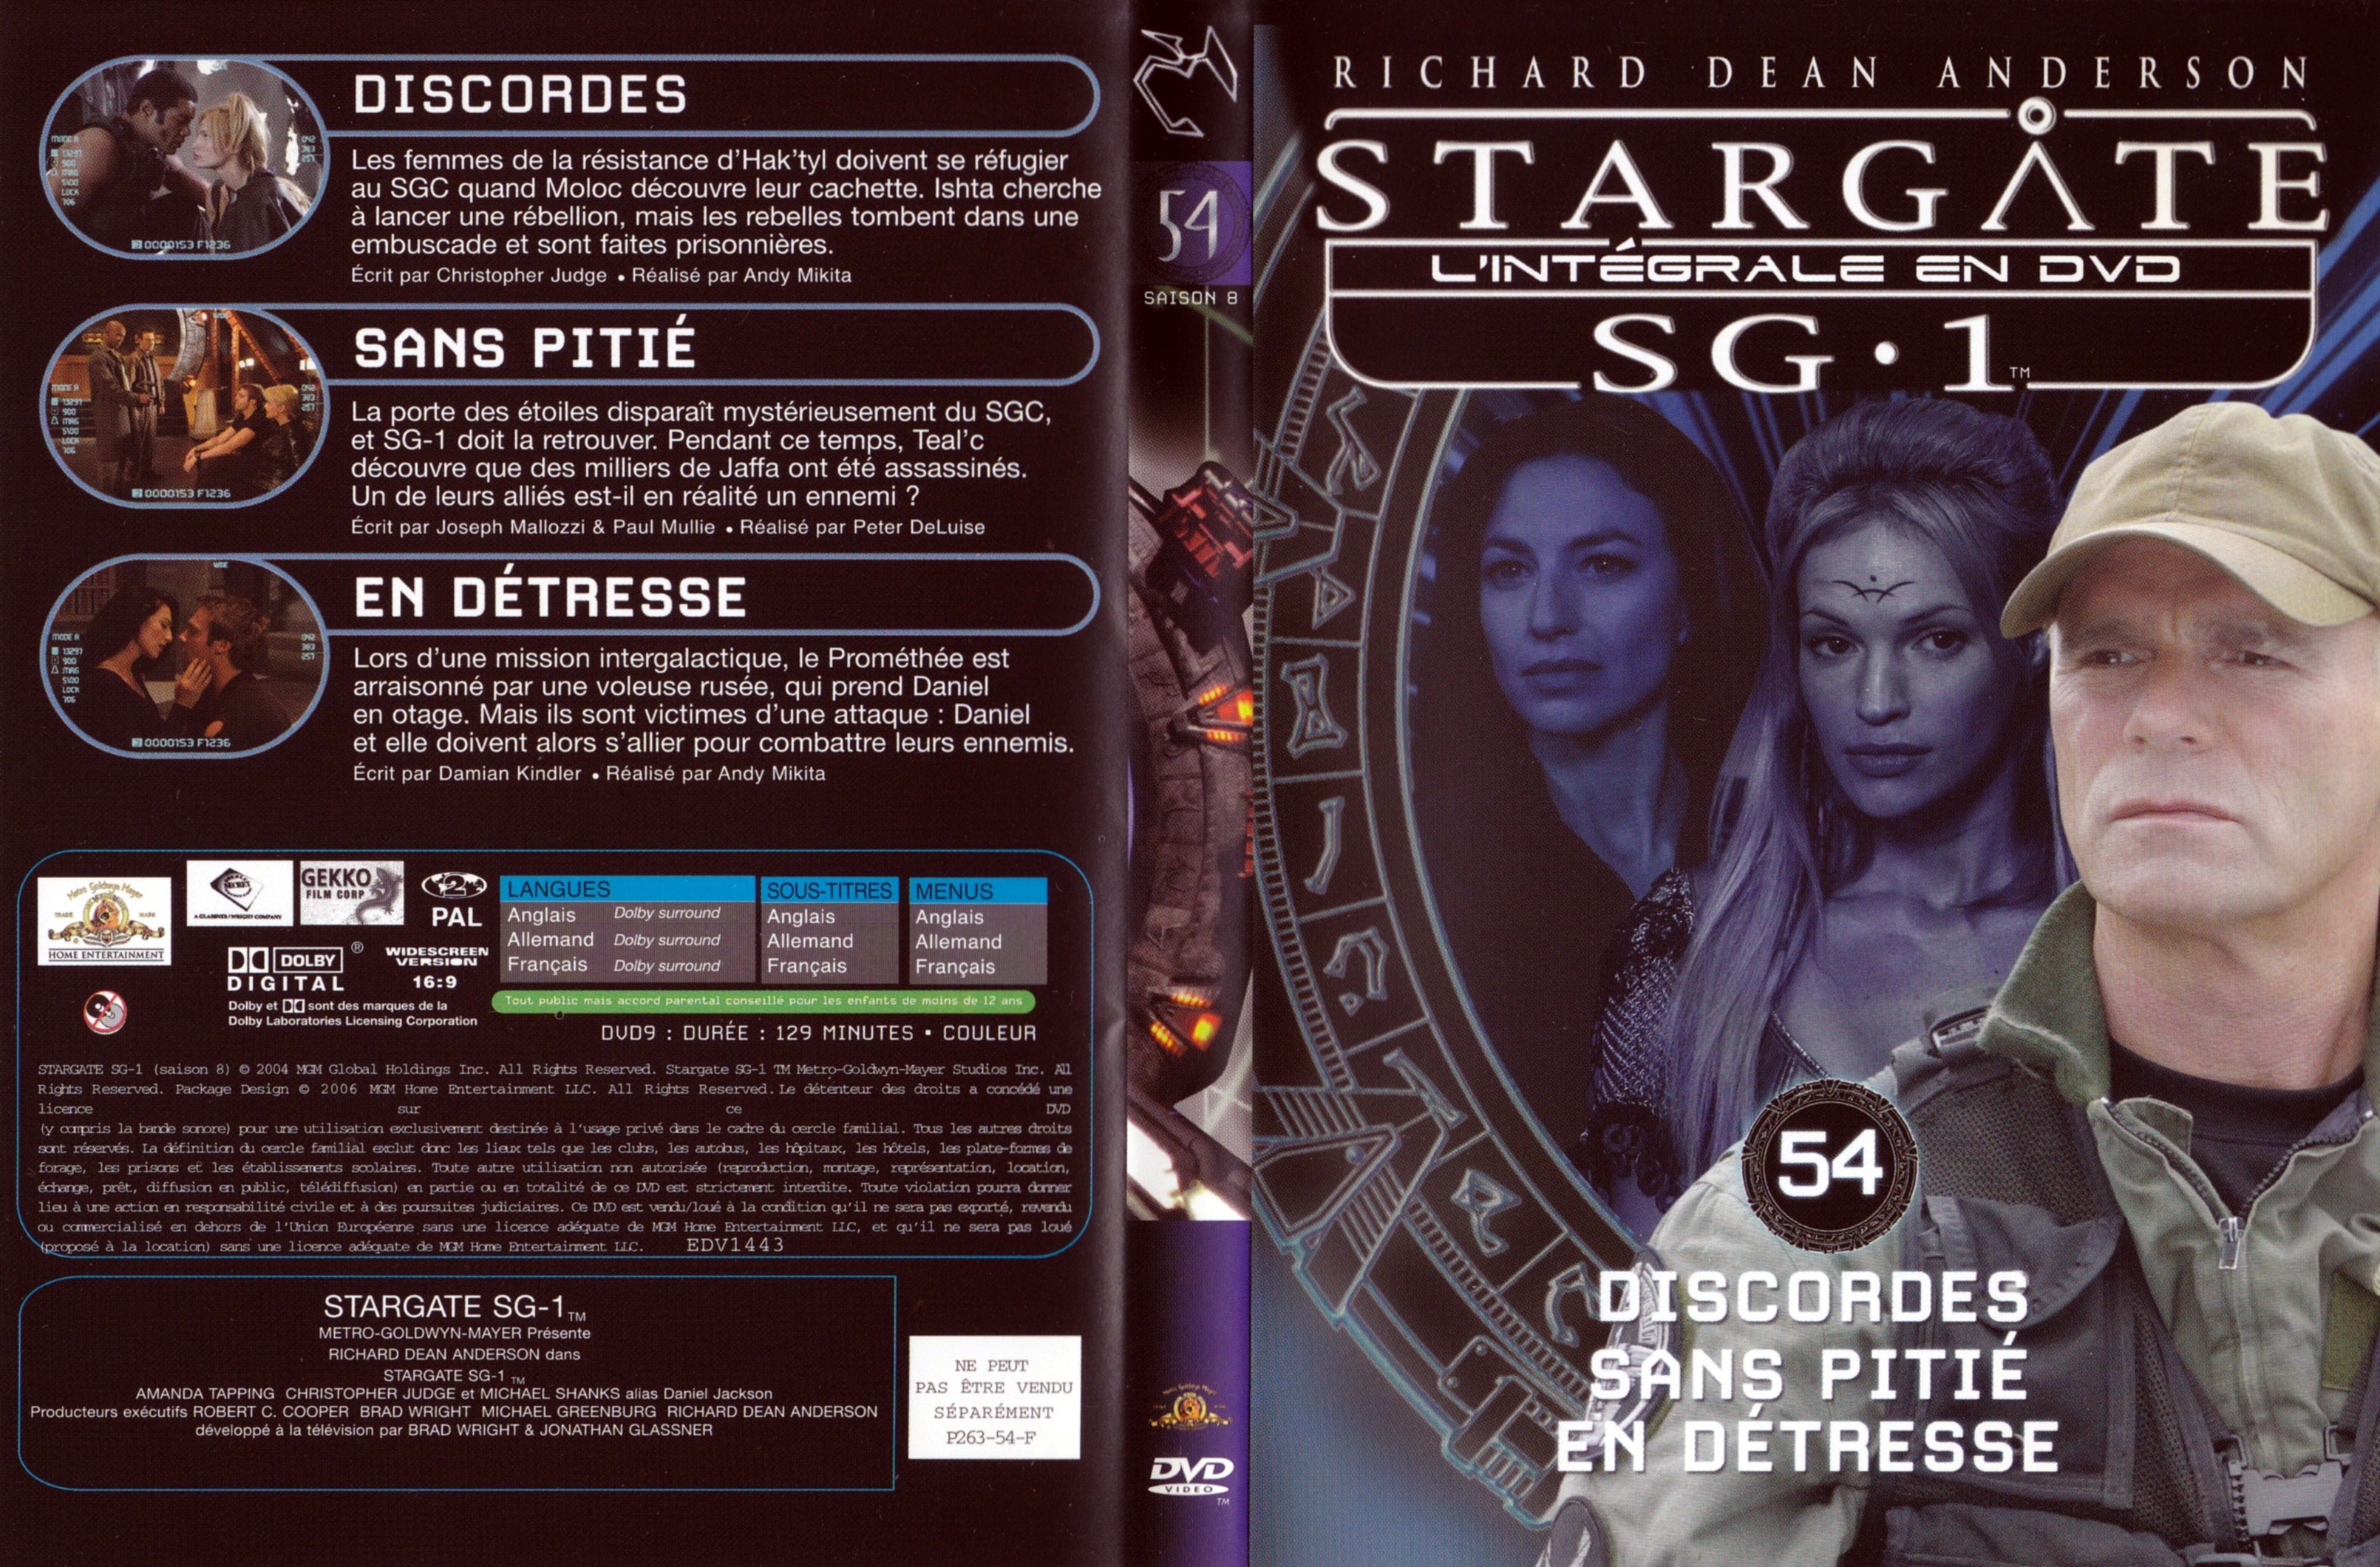 Jaquette DVD Stargate SG1 Intgrale Saison 8 vol 54